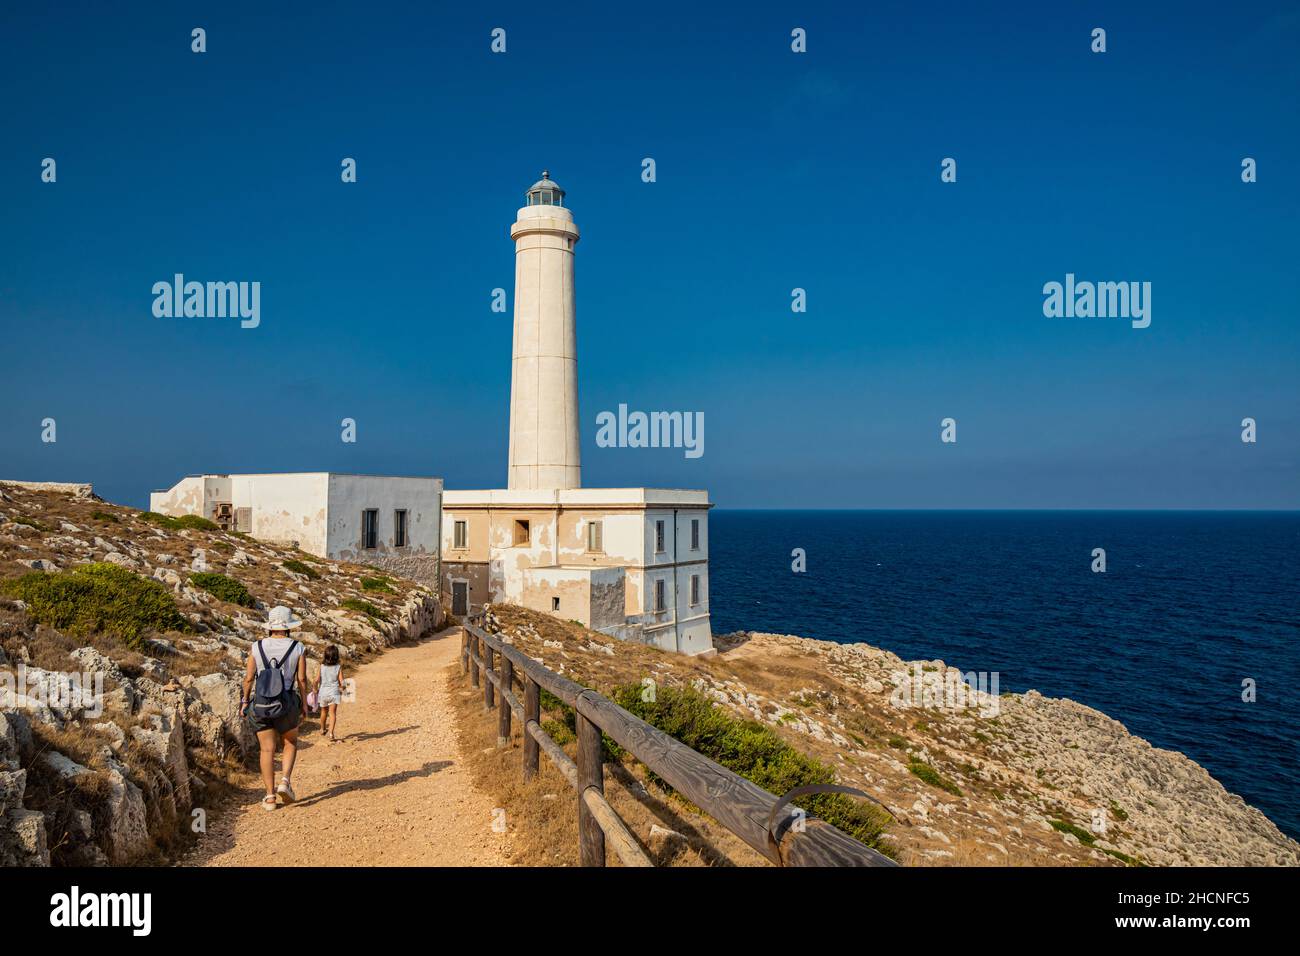 Der Leuchtturm von Punta Palascia, in Otranto, Lecce, Salento, Apulien, Italien. Das Kap ist Italiens östlichster Punkt. Ein kleines Mädchen mit ihrer Mutter wa Stockfoto